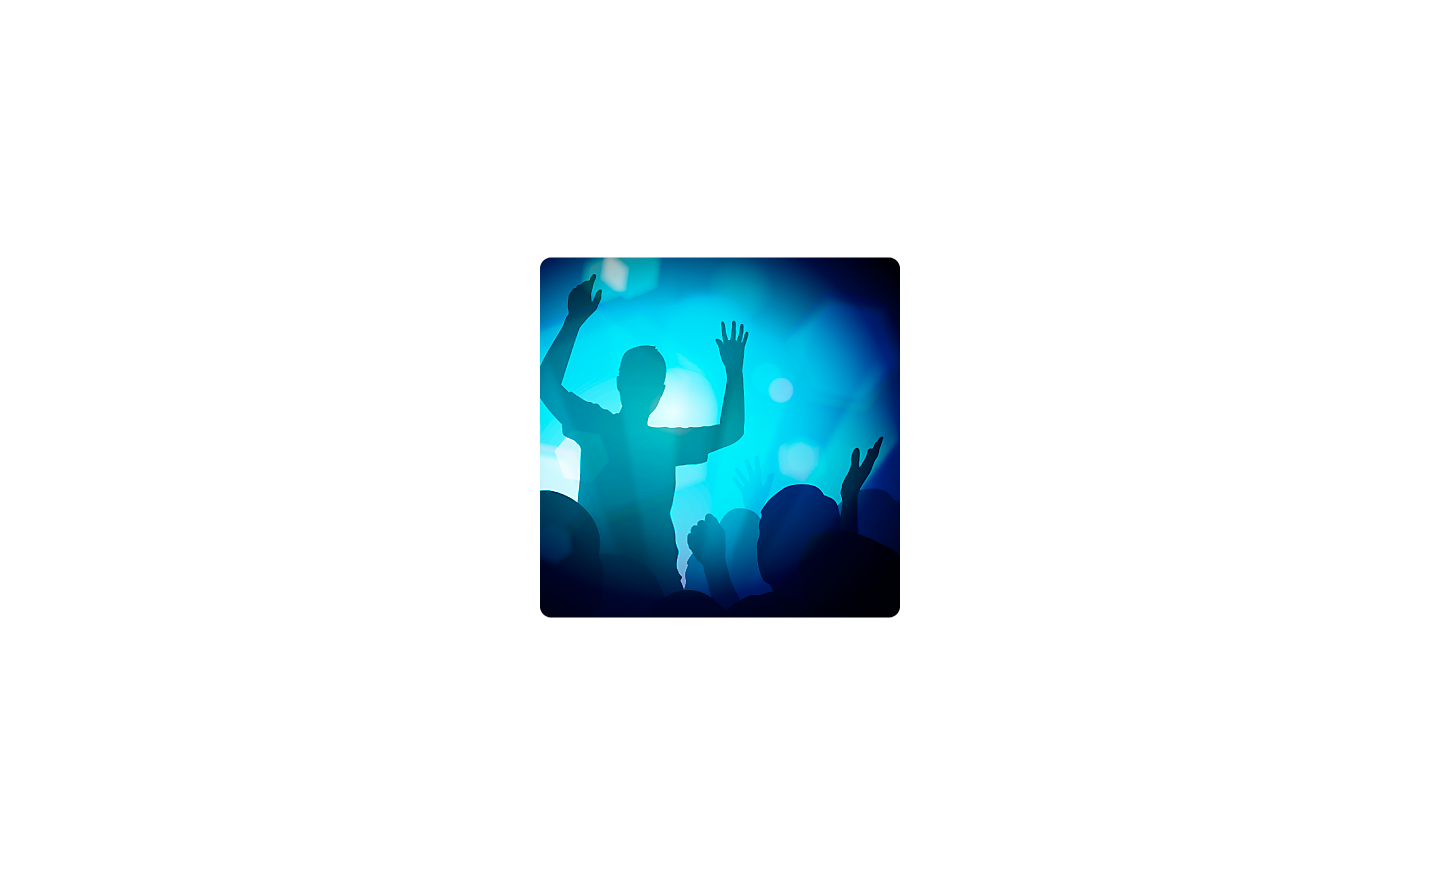 Zdjęcie osoby unoszącej ręce w ciemnym miejscu, z niebieskim oświetleniem